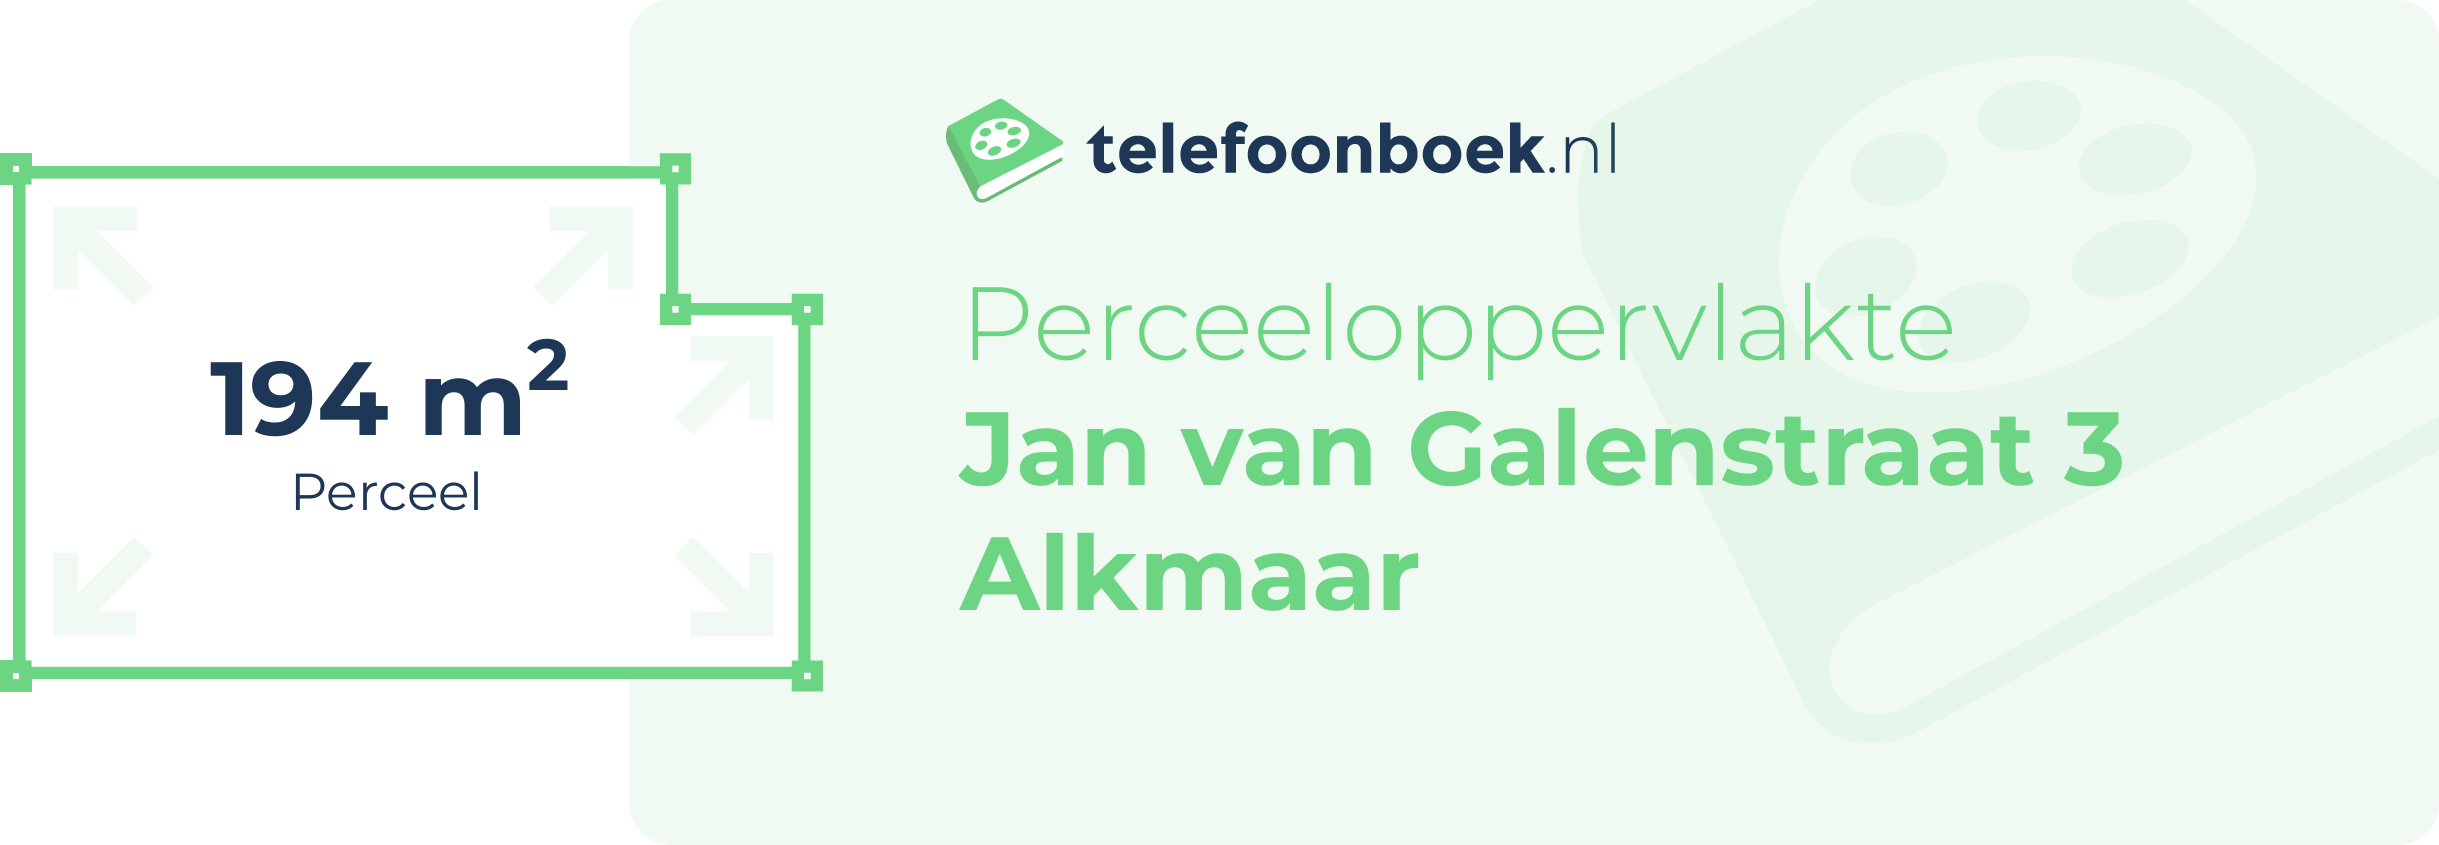 Perceeloppervlakte Jan Van Galenstraat 3 Alkmaar